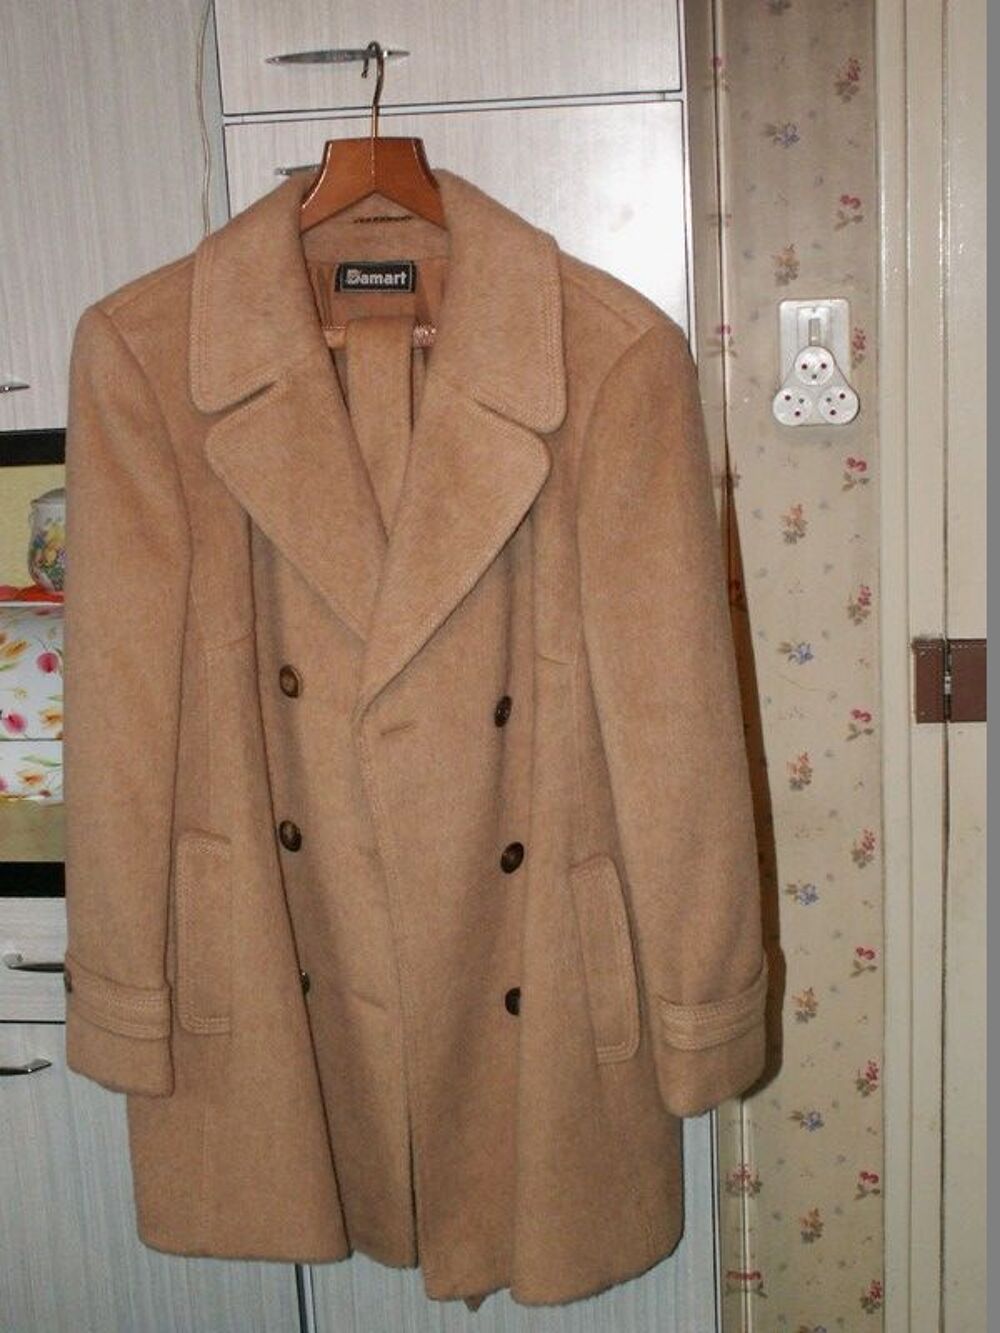 beau manteau DAMART tr&egrave;s chaud taille 52
Vtements